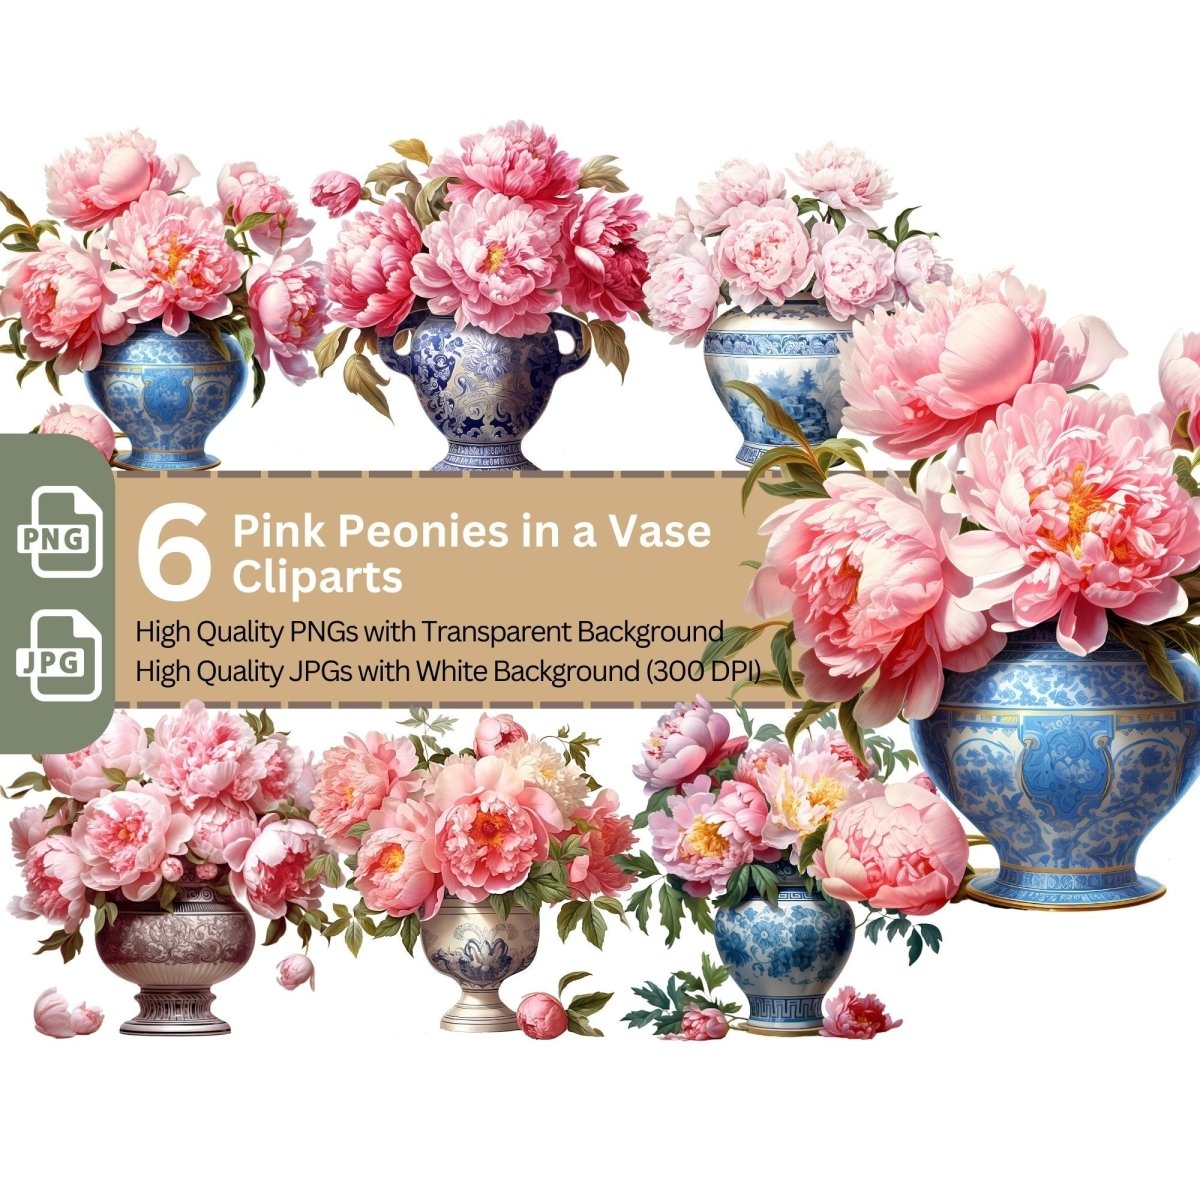 Pink Peonies in Vase 6+6 PNG Clip Art Bundle Floral Artwork - Everything Pixel